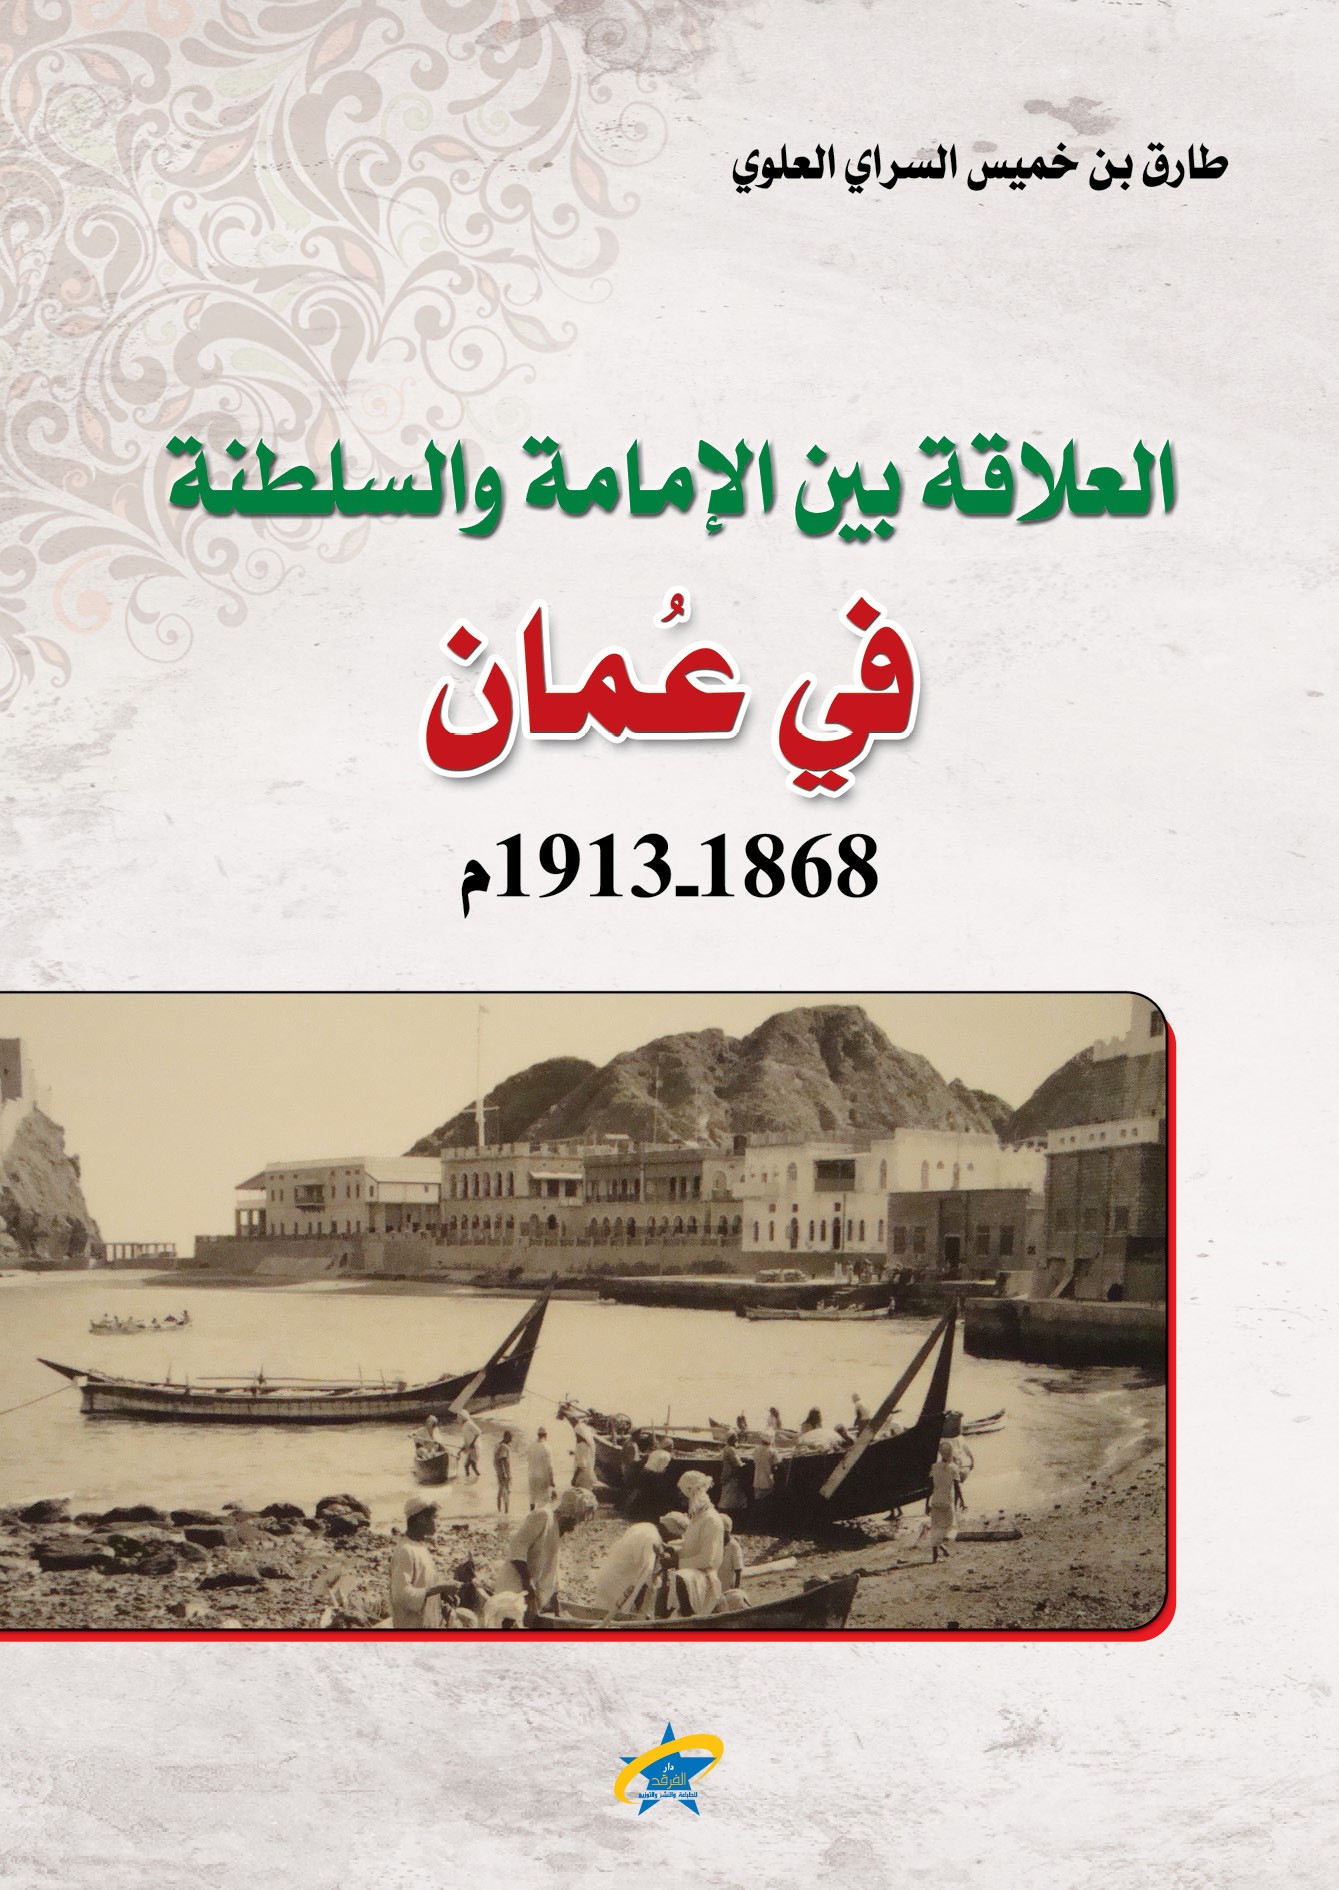 العلاقة بين الامامة والسلطنة في عُمان 1863 - 1913م